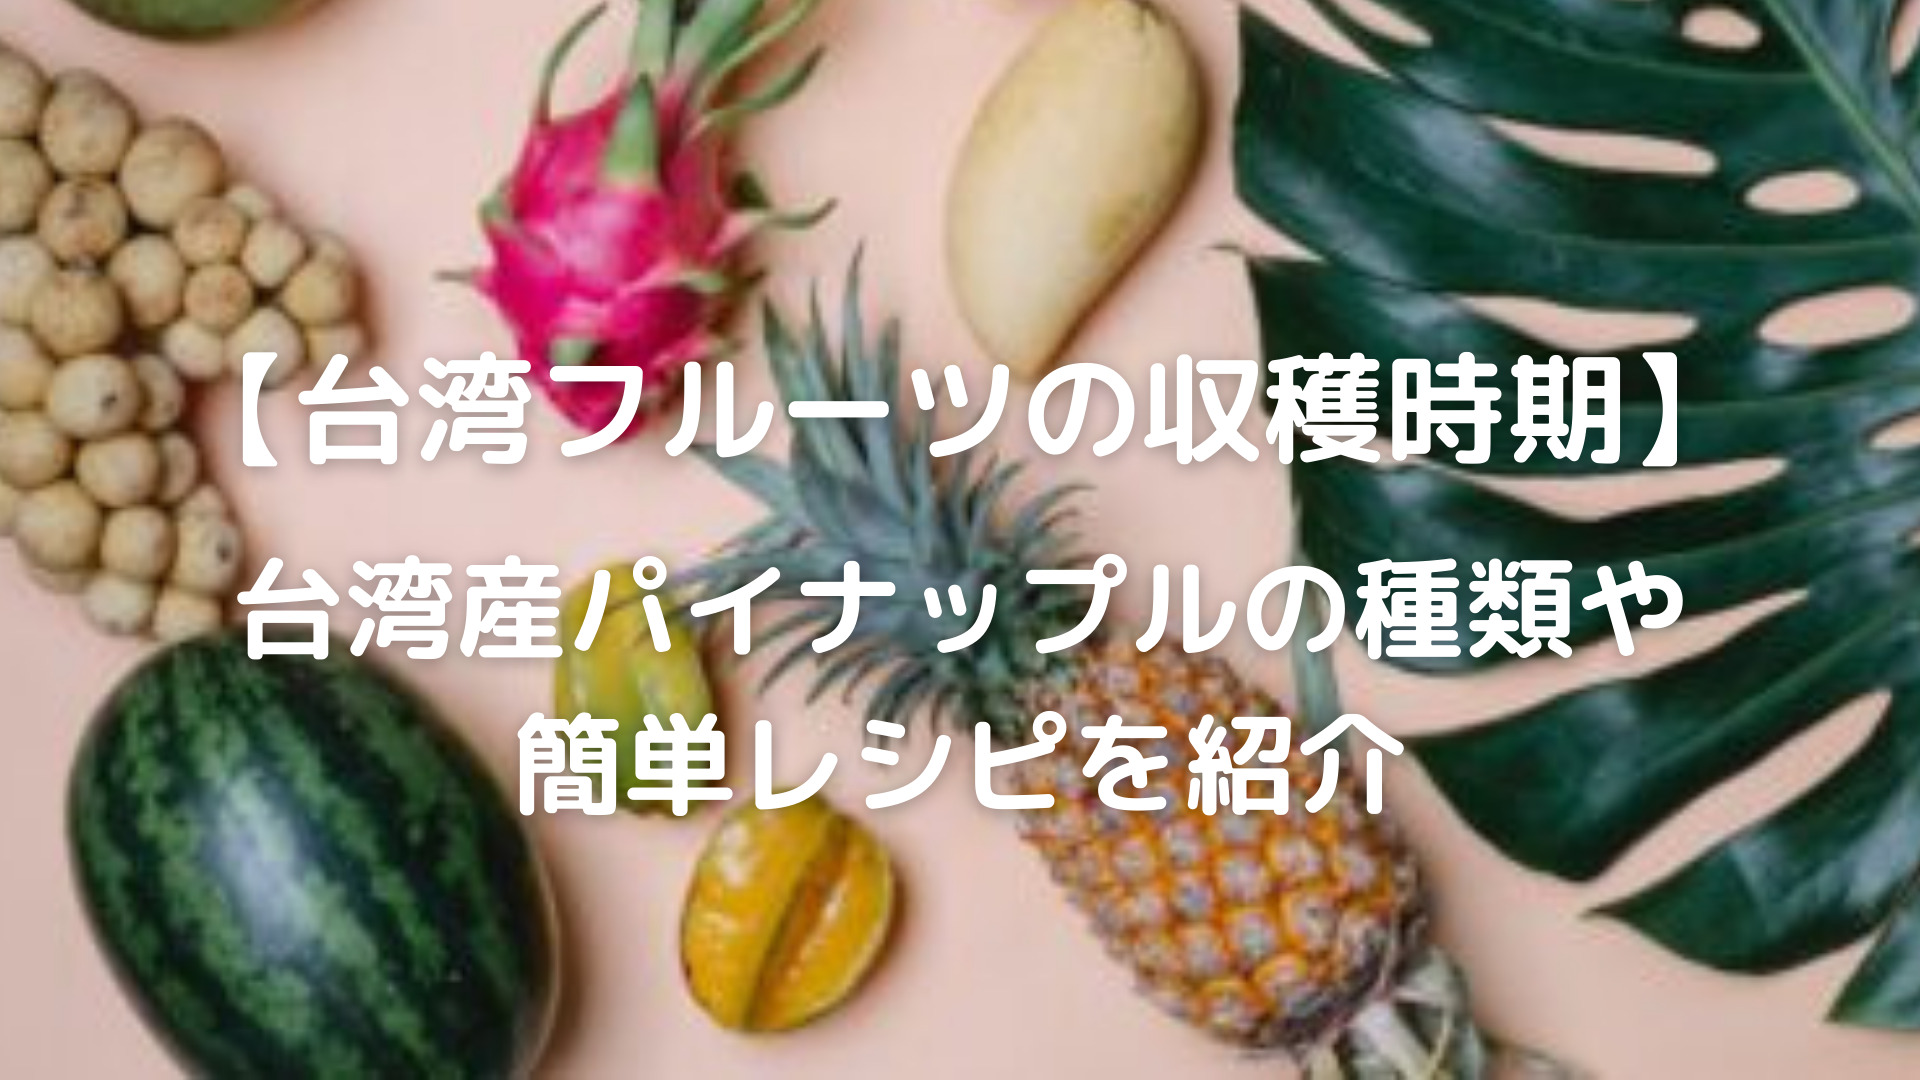 台湾フルーツの収穫時期 台湾産パイナップルの種類や簡単レシピを紹介 台湾のフルーツの収穫時期とは 台湾産フルーツの簡単レシピを紹介します